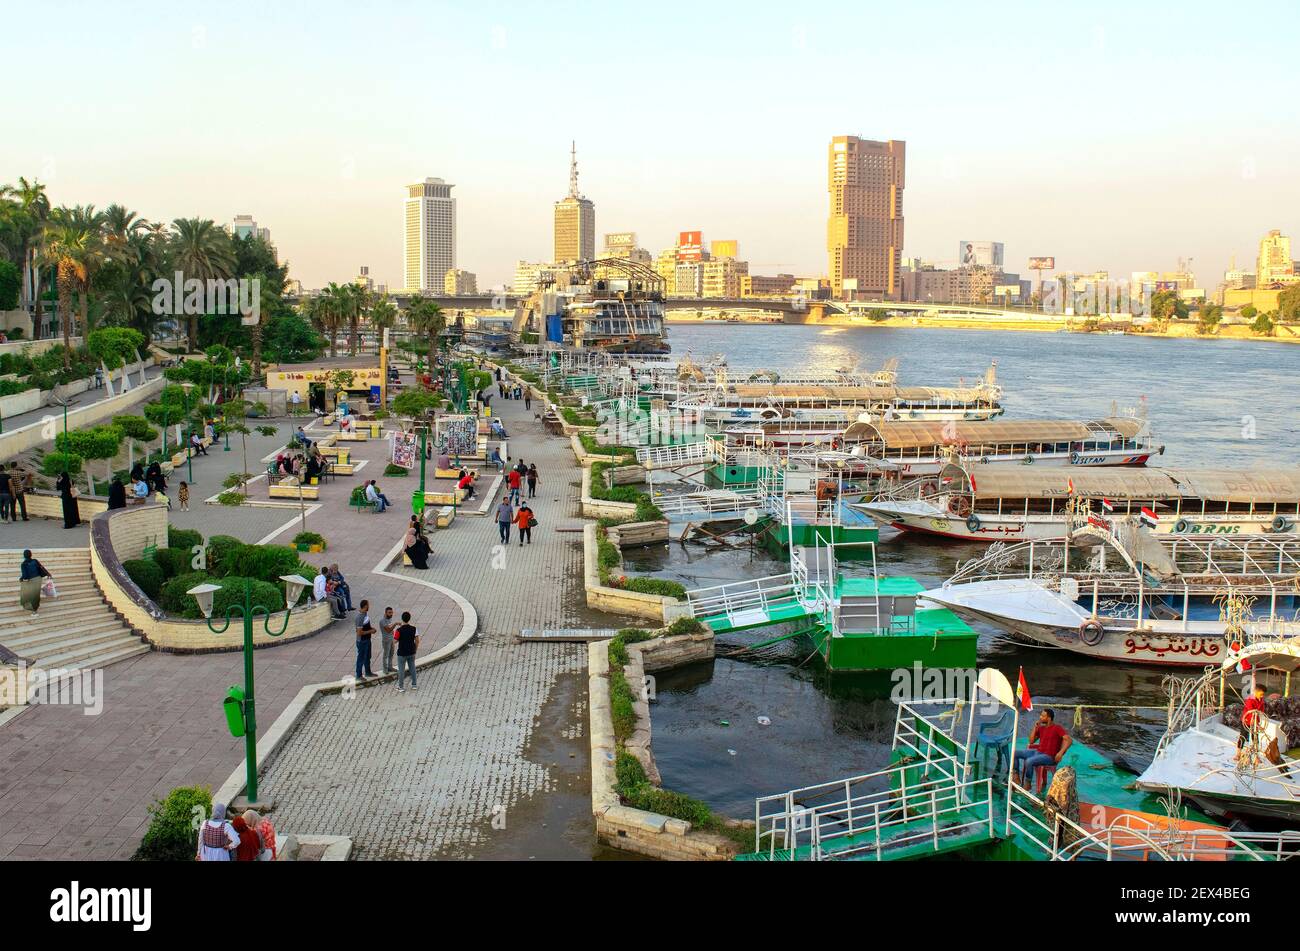 Le Caire - Égypte - 04 octobre 2020 : vue sur le magnifique fleuve large du Nil au coeur de la capitale africaine. Promenade du Nil avec des bateaux garés, des navires, Banque D'Images